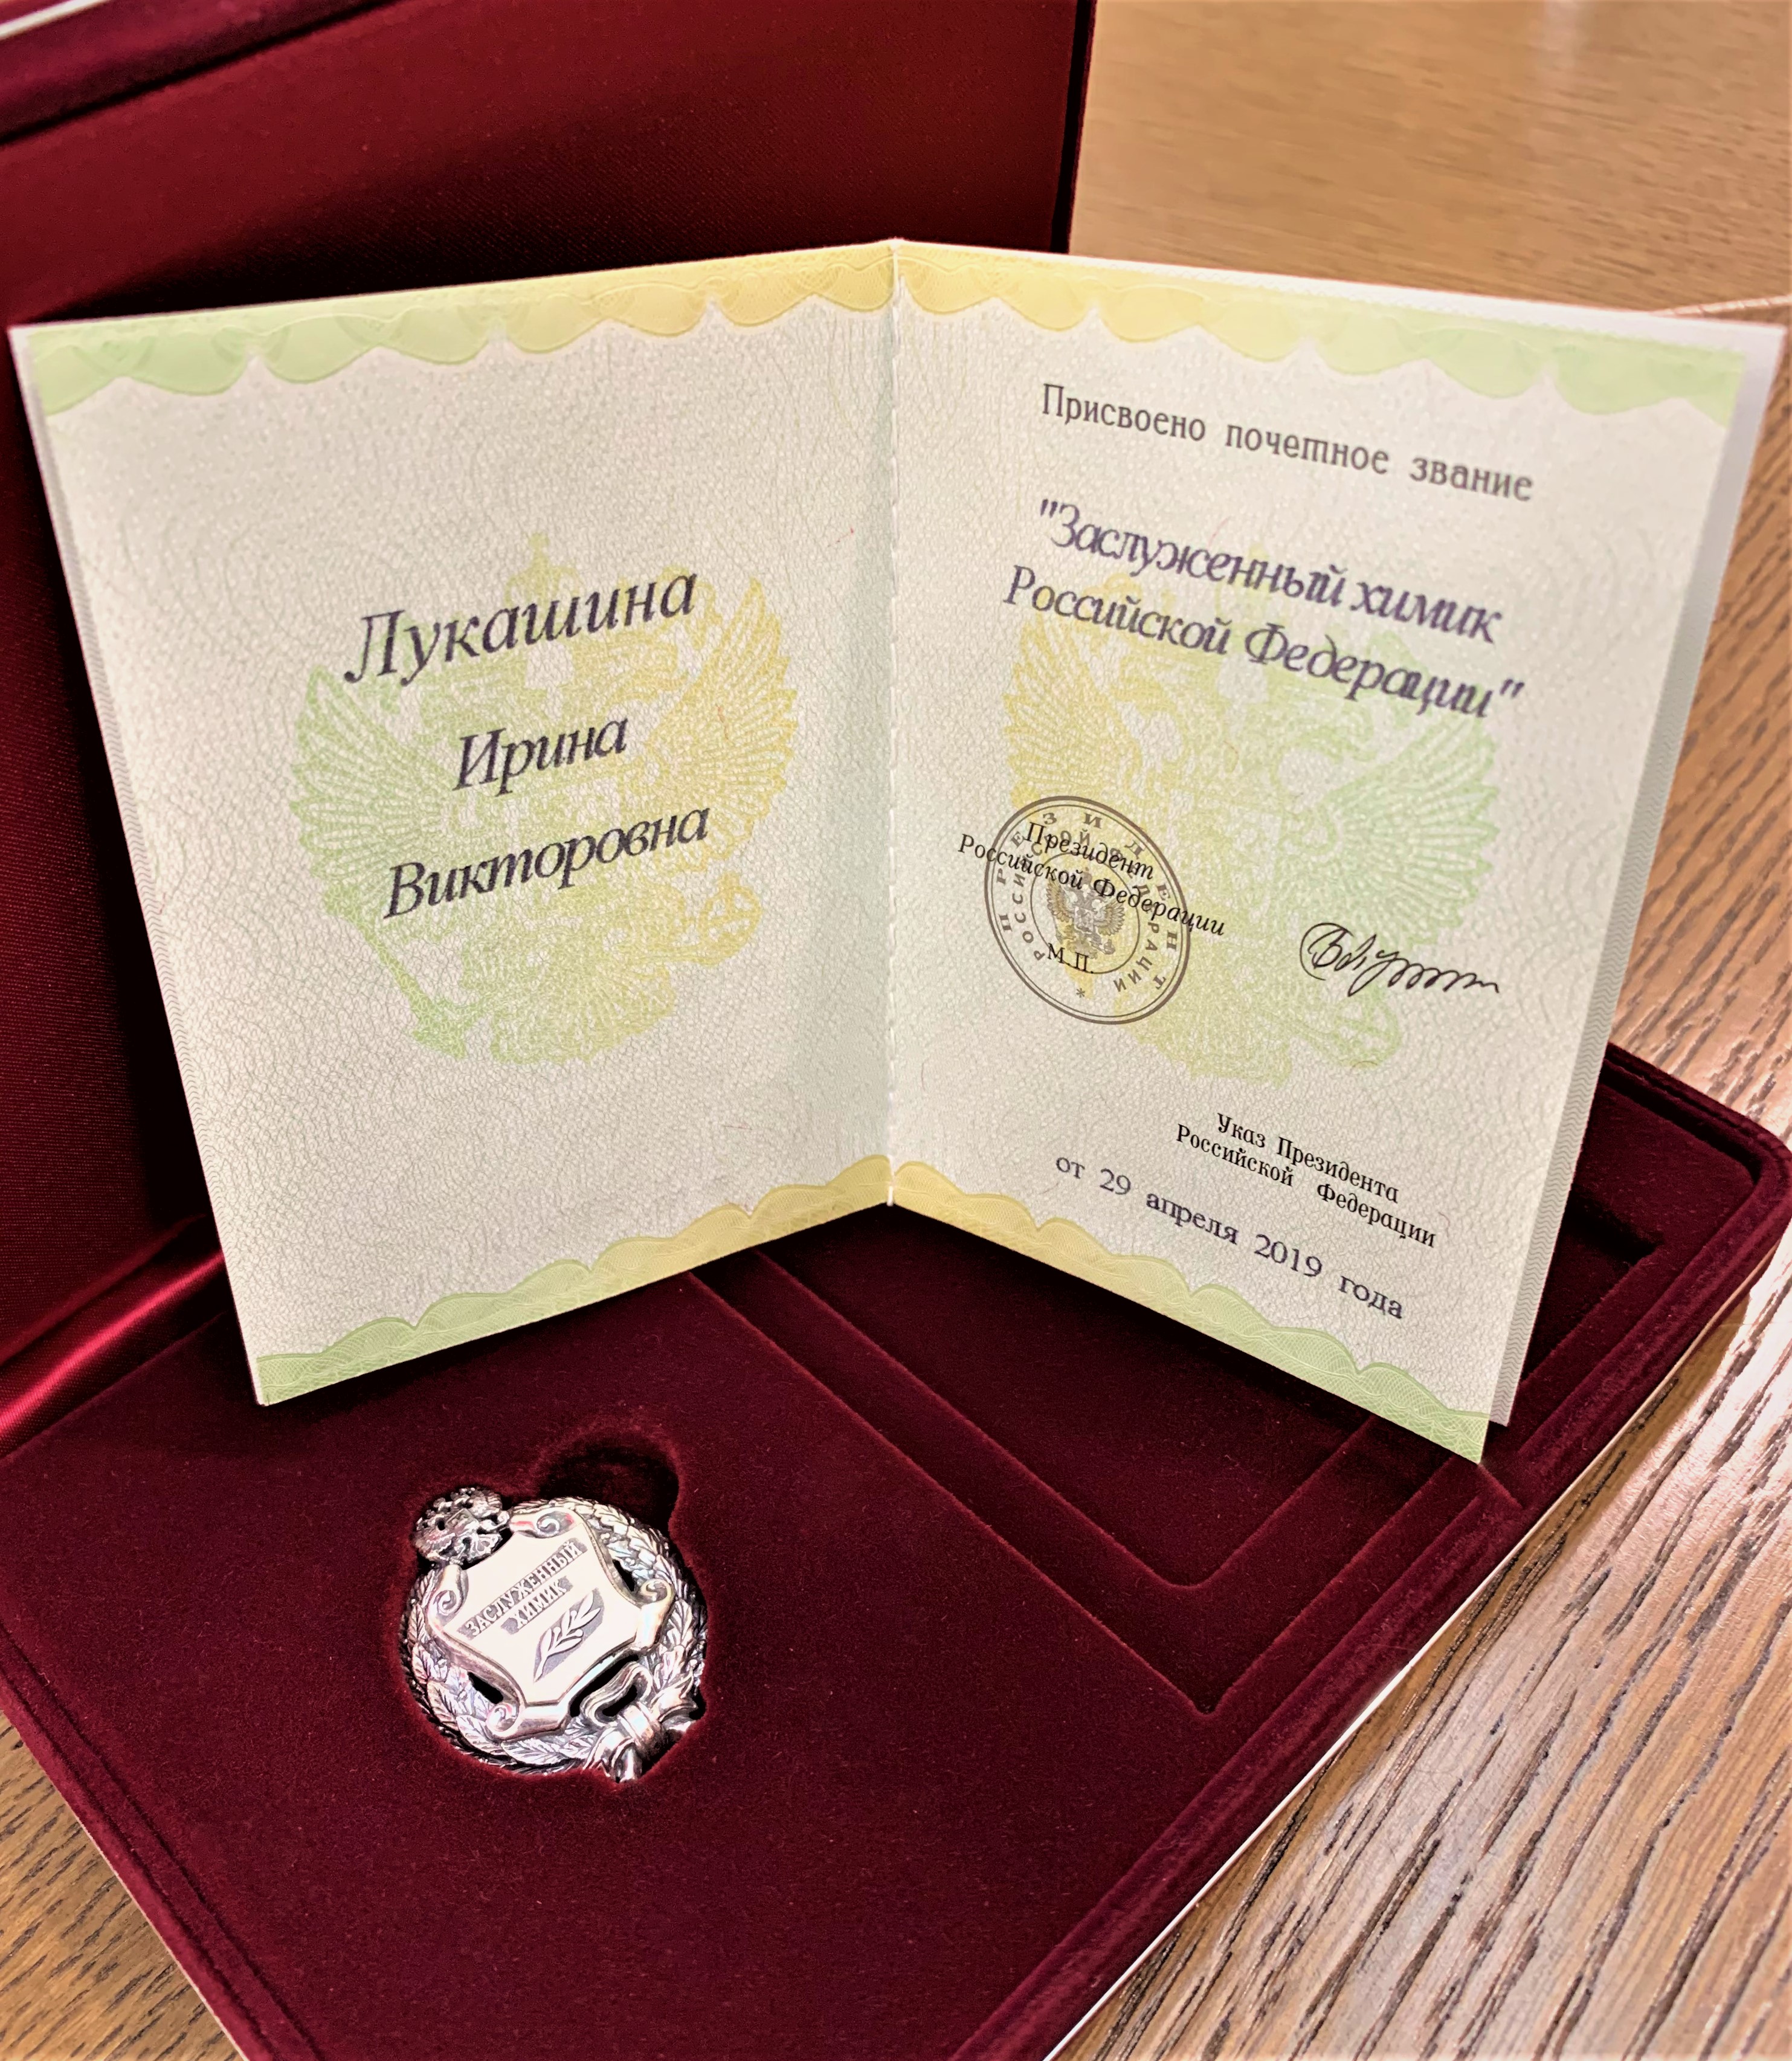 21 октября в Министерстве промышленности и торговли Российской Федерации состоялась торжественная церемония вручения государственных наград